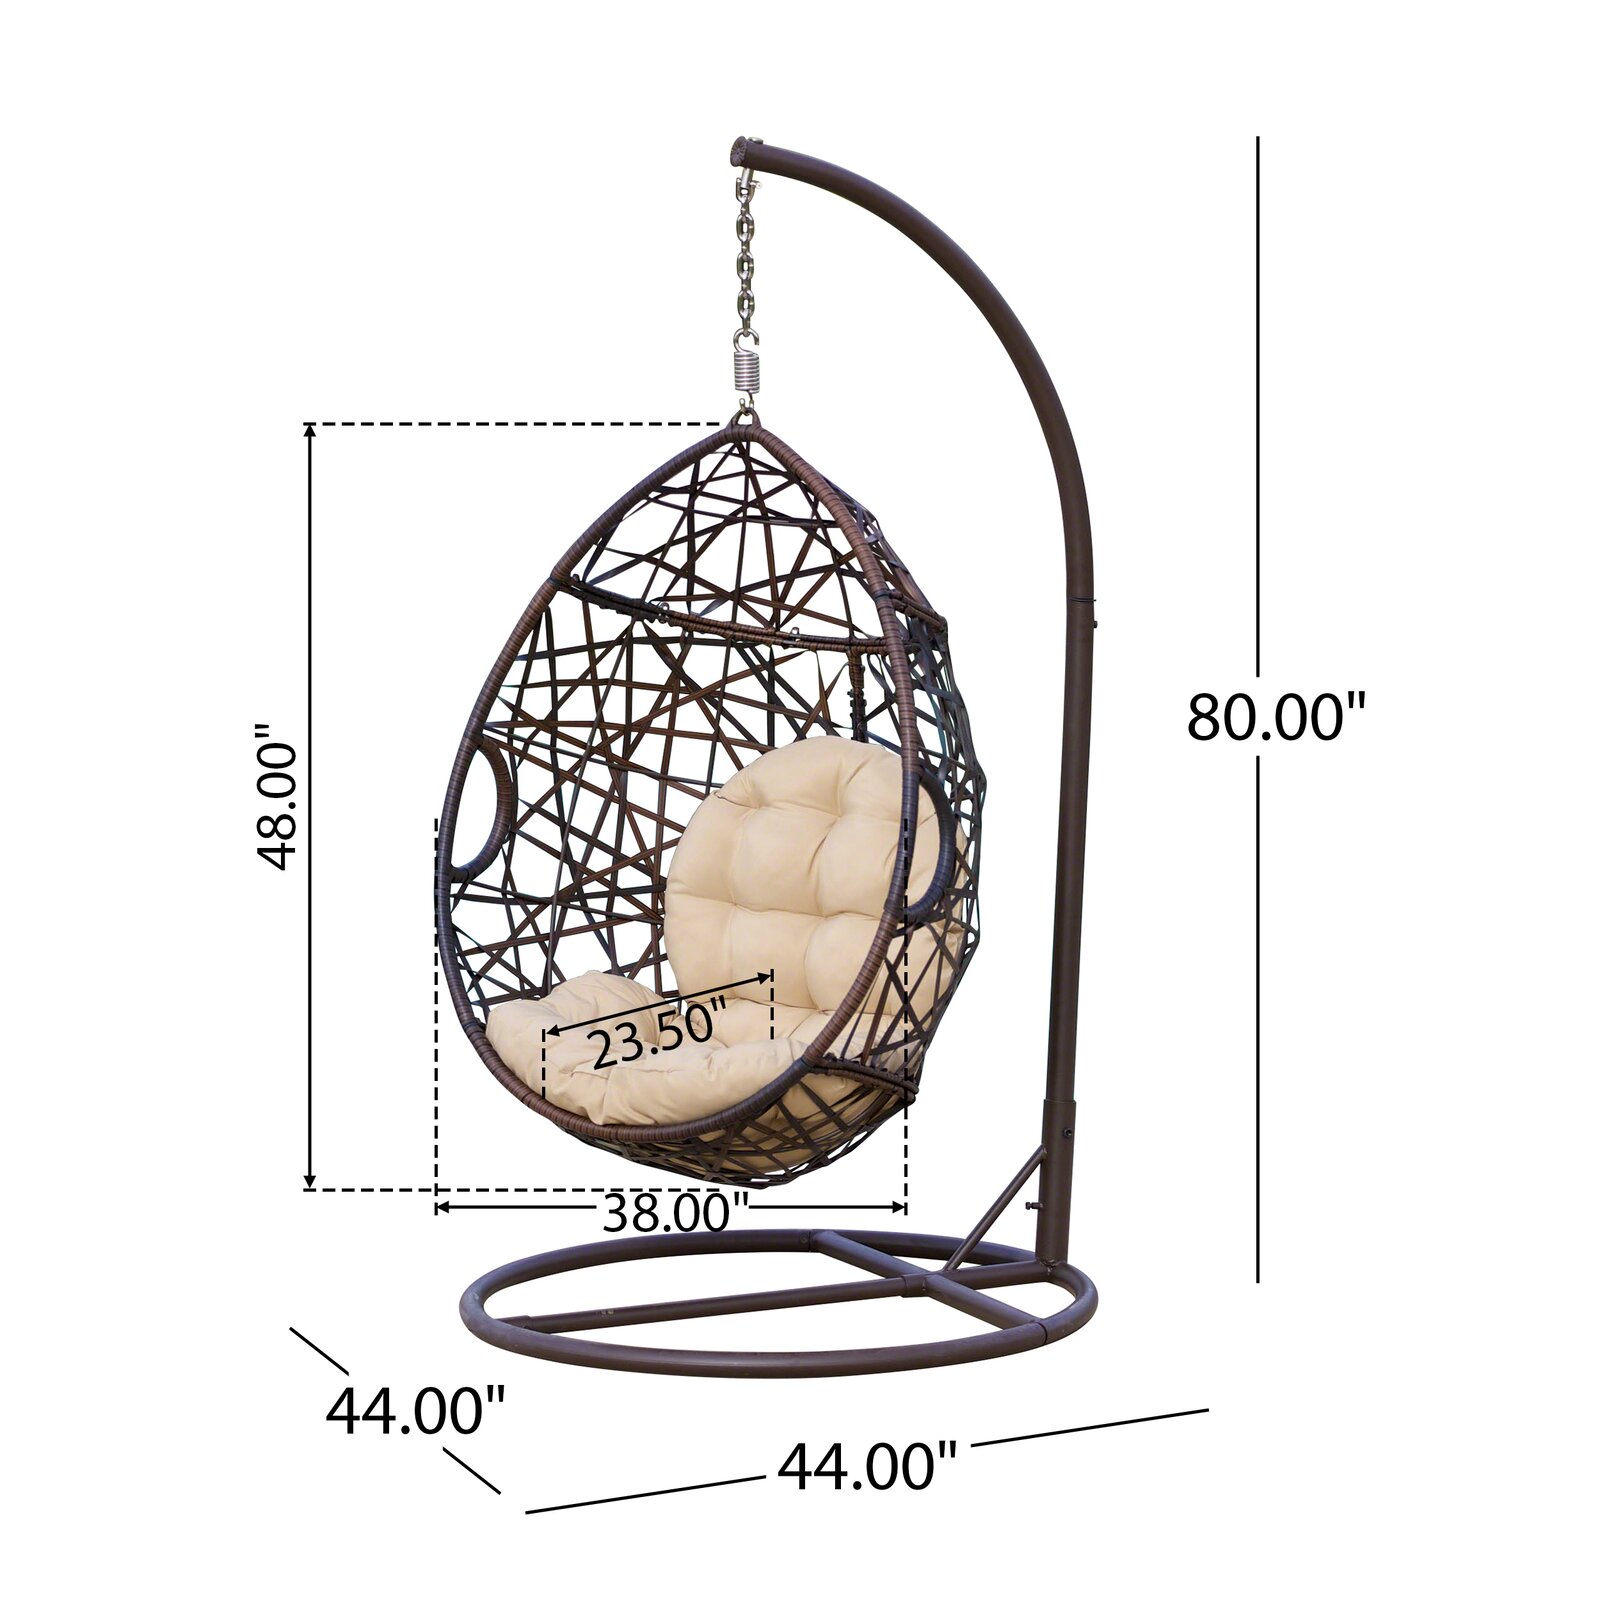 Silla giratoria Darwin egg con soporte